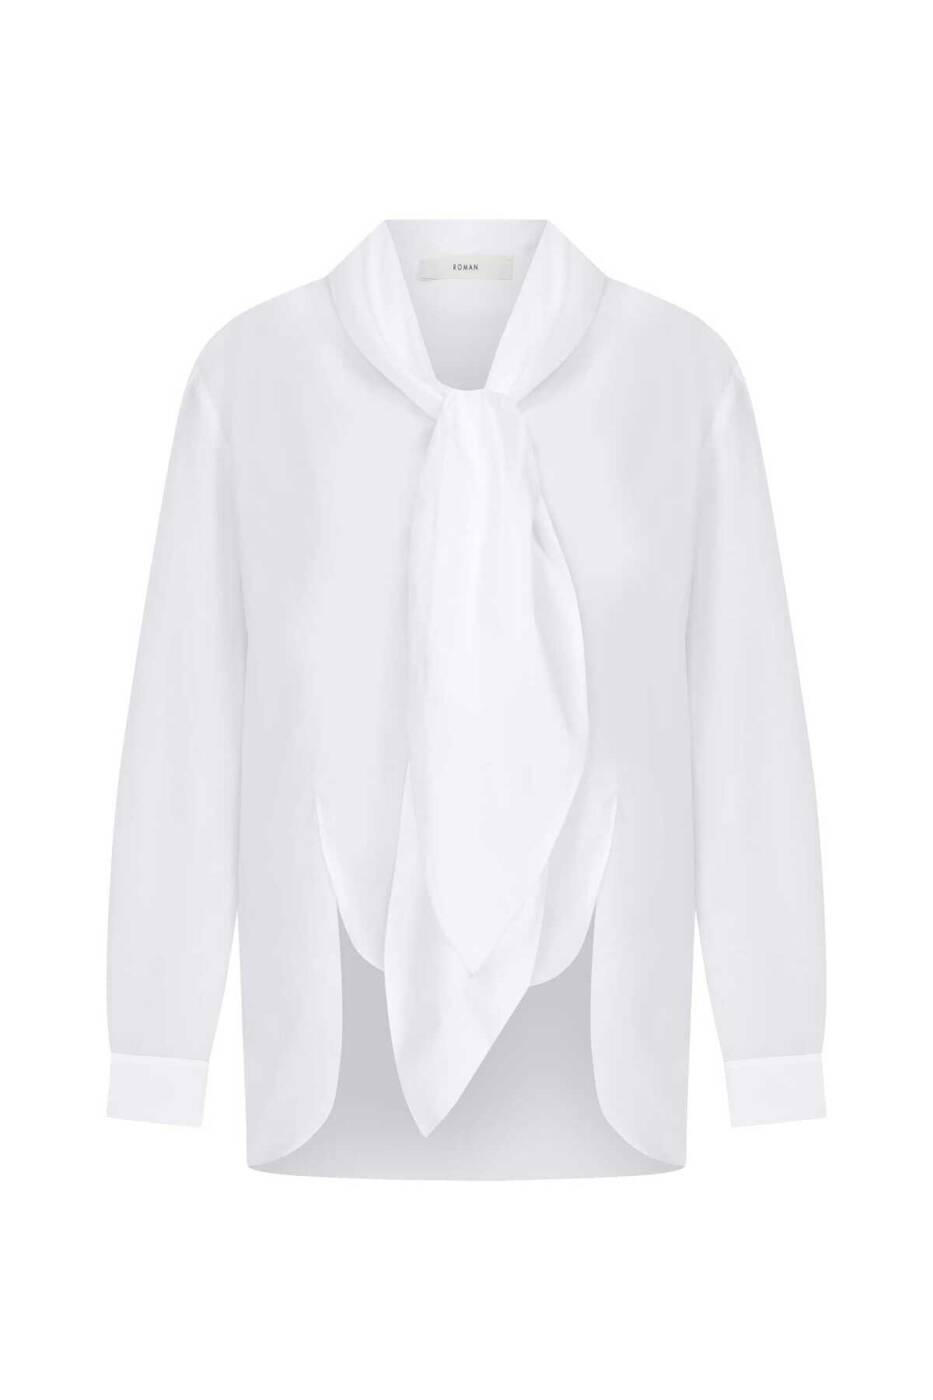  Bağlamalı Kadın Gömlek Beyaz - 4